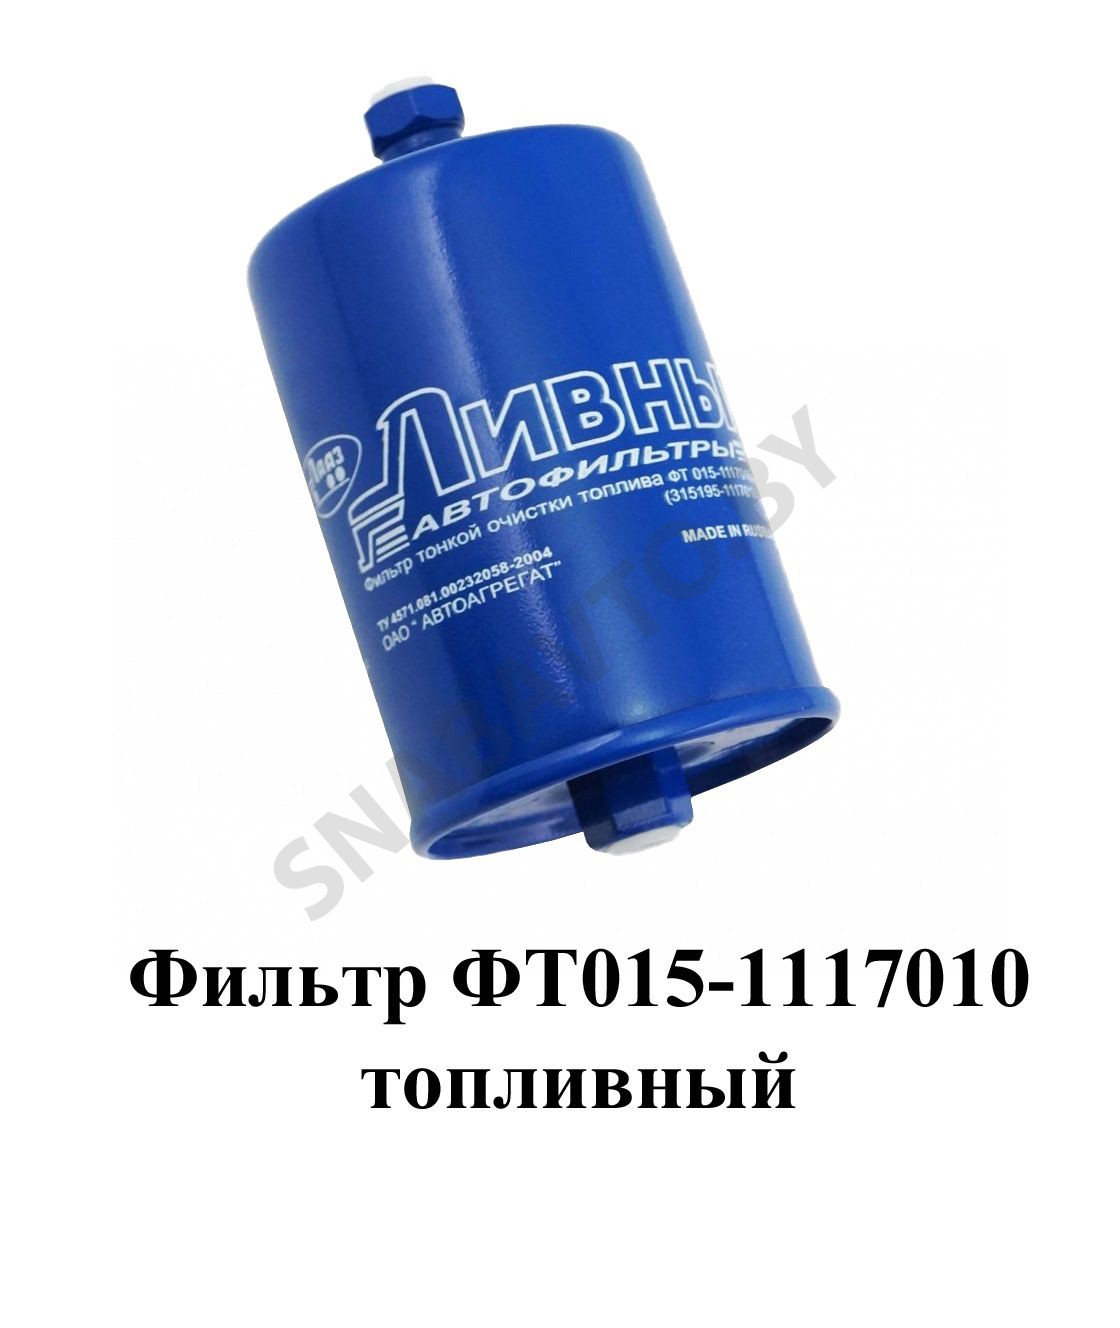 Фильтр топливный ФТ015-1117010, RCZP LTD